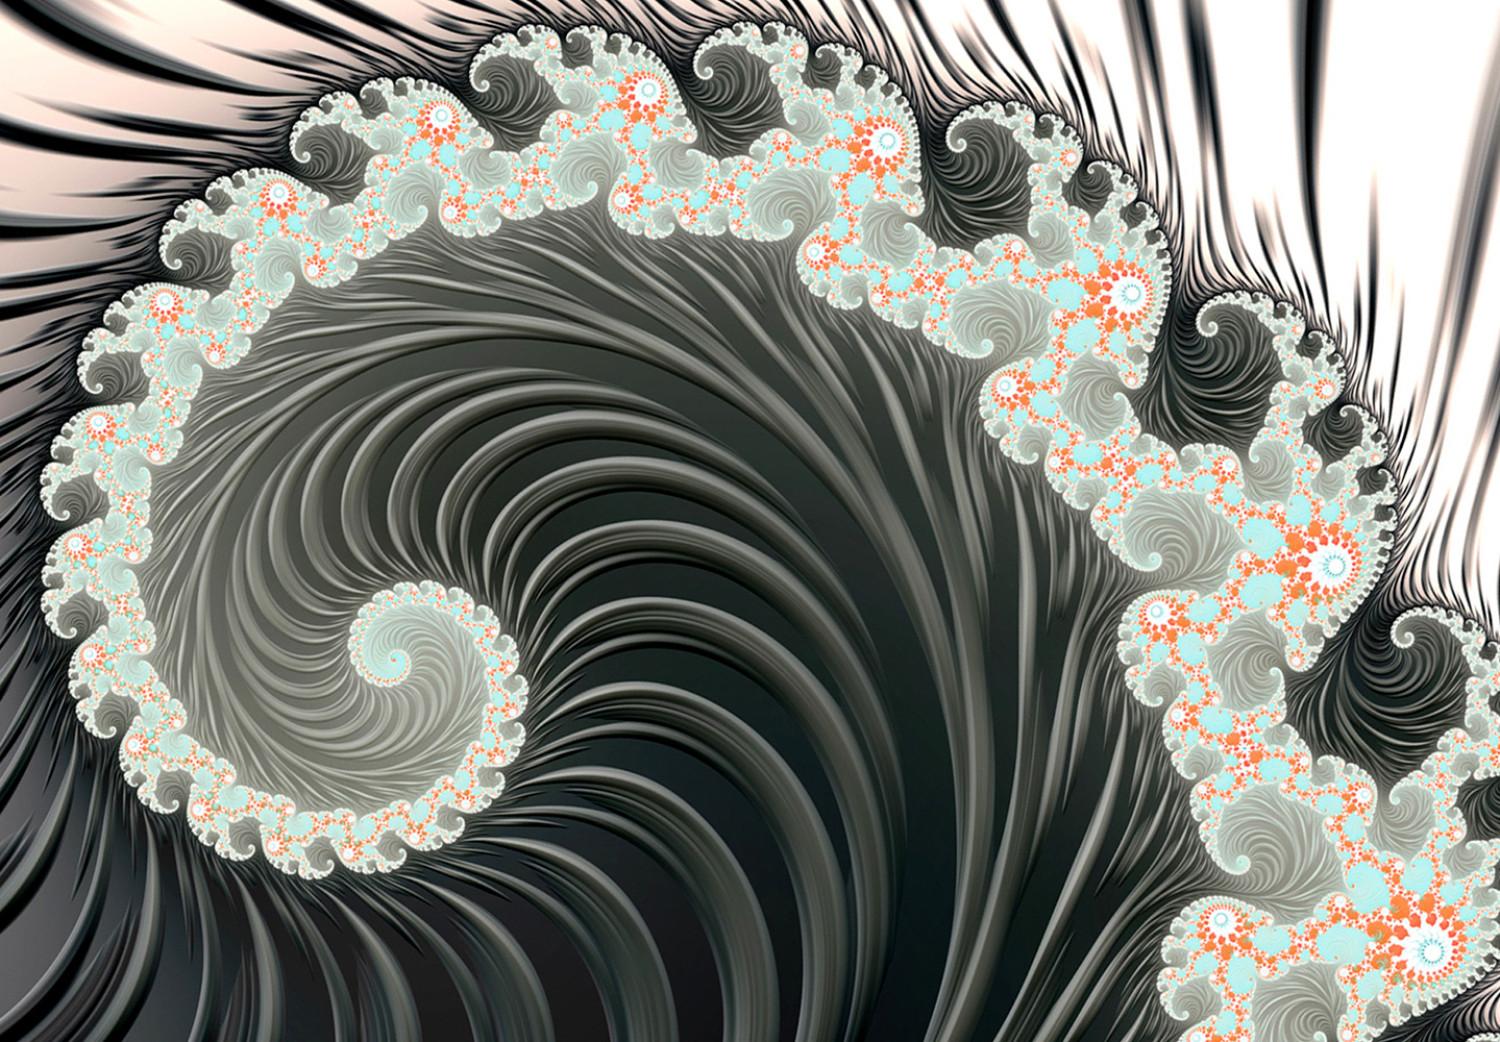 Cuadro moderno Fractales espirales - patrón psicodélico abstracto sobre fondo blanco